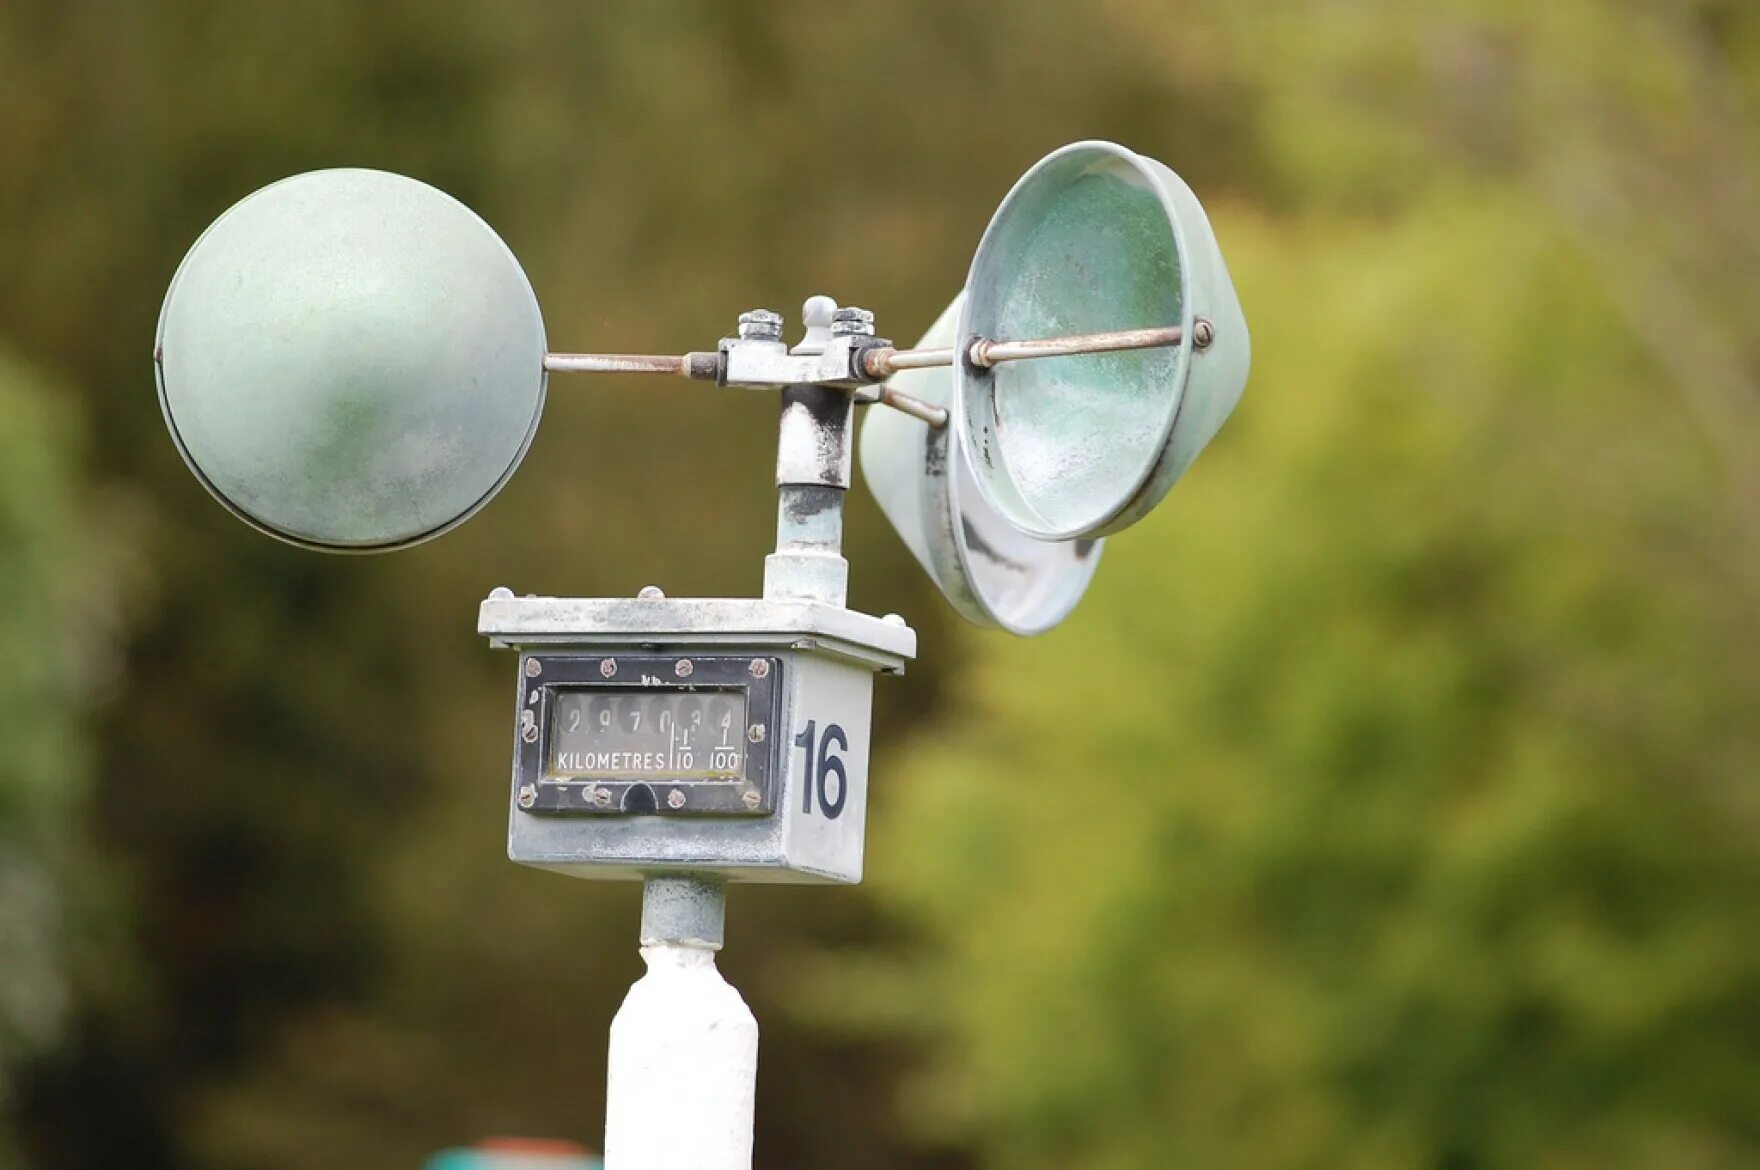 Какие приборы нужны для наблюдения. Мс1-р11 анемометр. Анемометр это прибор для измерения скорости ветра. Анемометр ДВЭС-2. Ам706 анемометр.